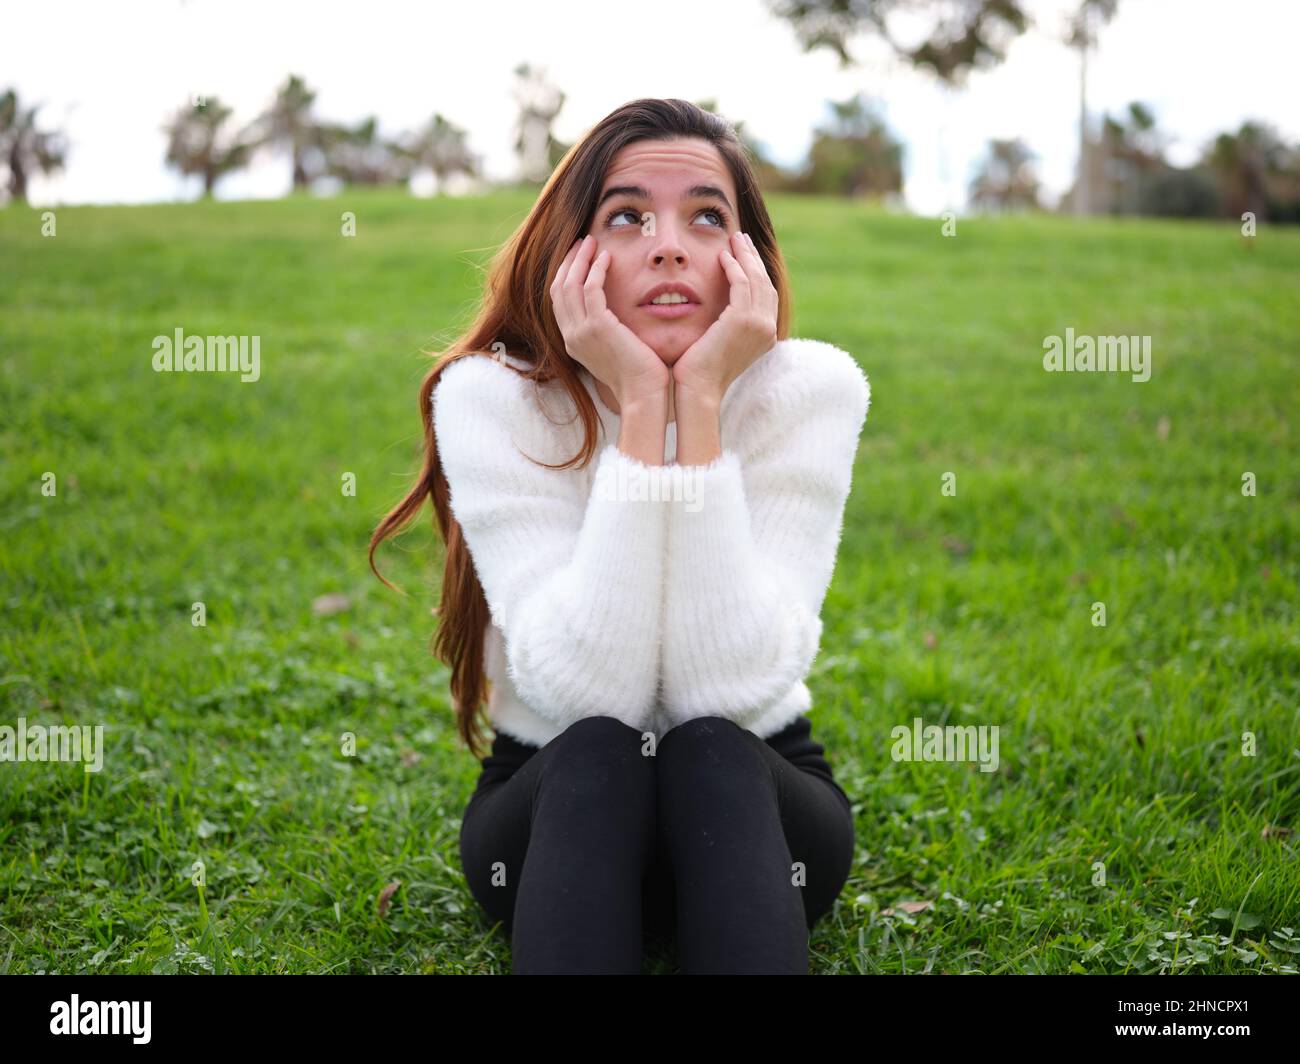 Eine junge Frau im Park, die auf dem Gras sitzt und mit ihren Händen auf ihrem Kinn aufschaut, sich vorstellt oder denkt. Stockfoto